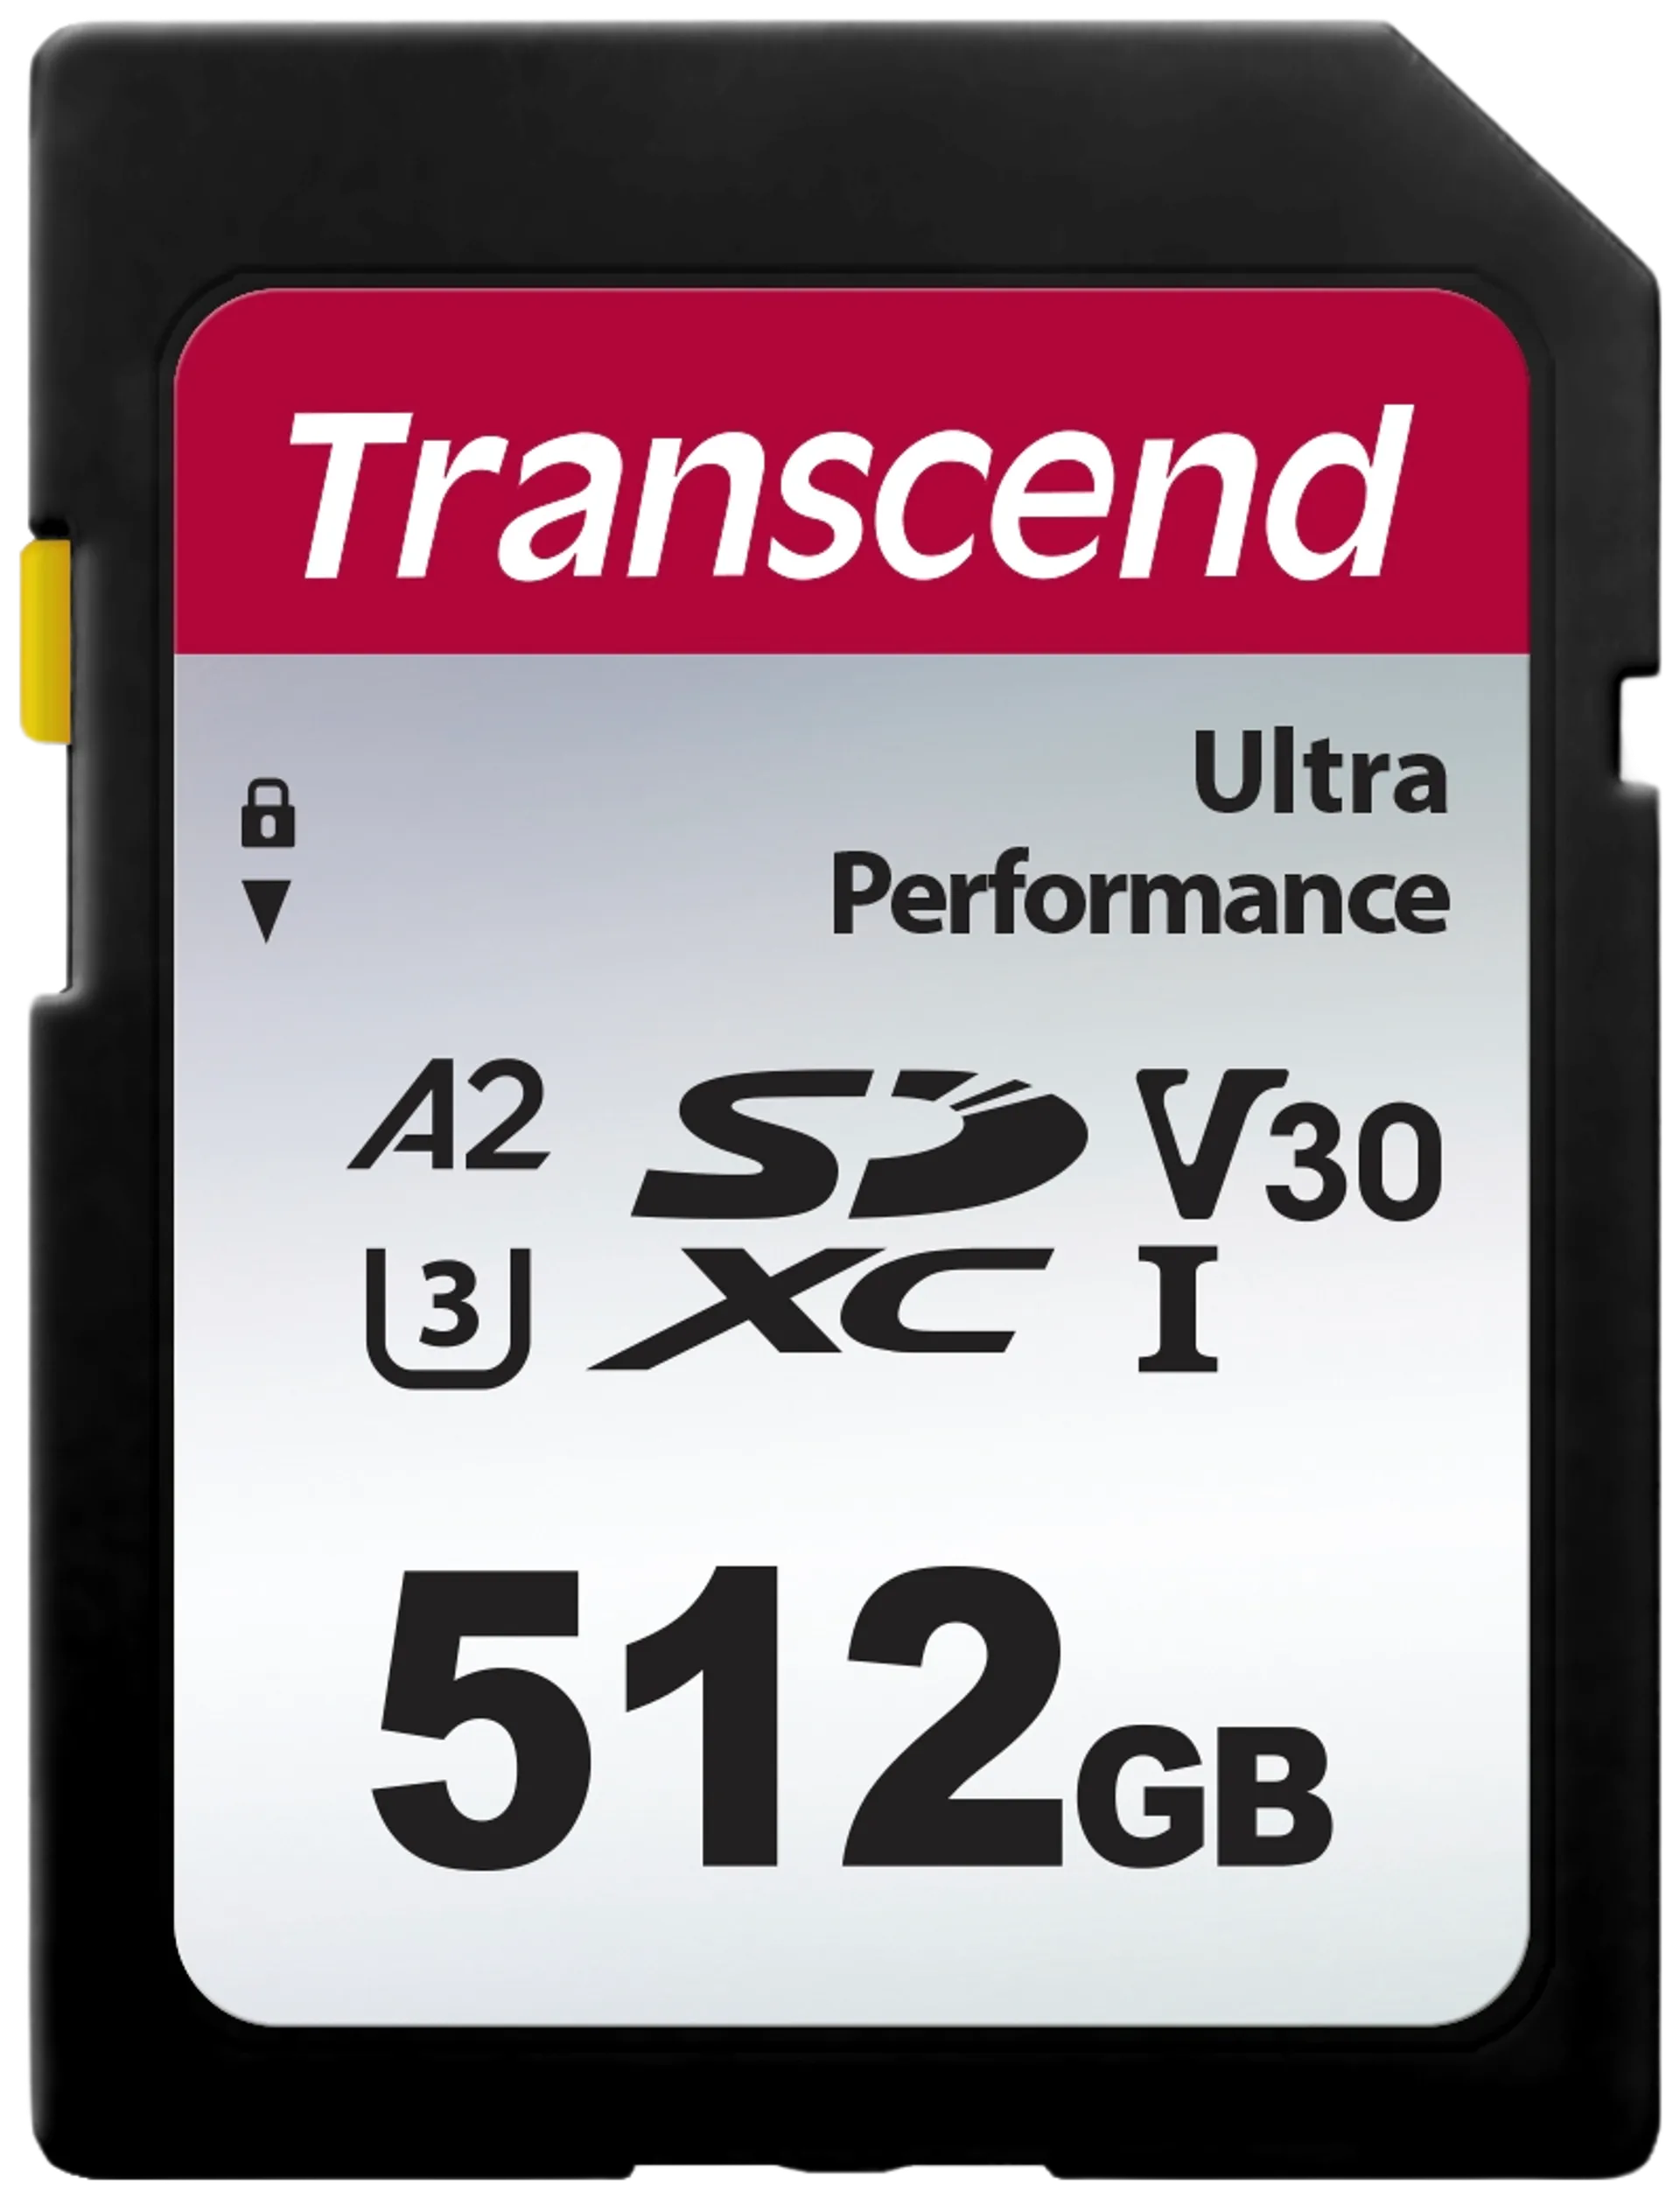 Transcend 340S 512GB U3 SDXC muistikortti (R160 W90 MB/s) - 1